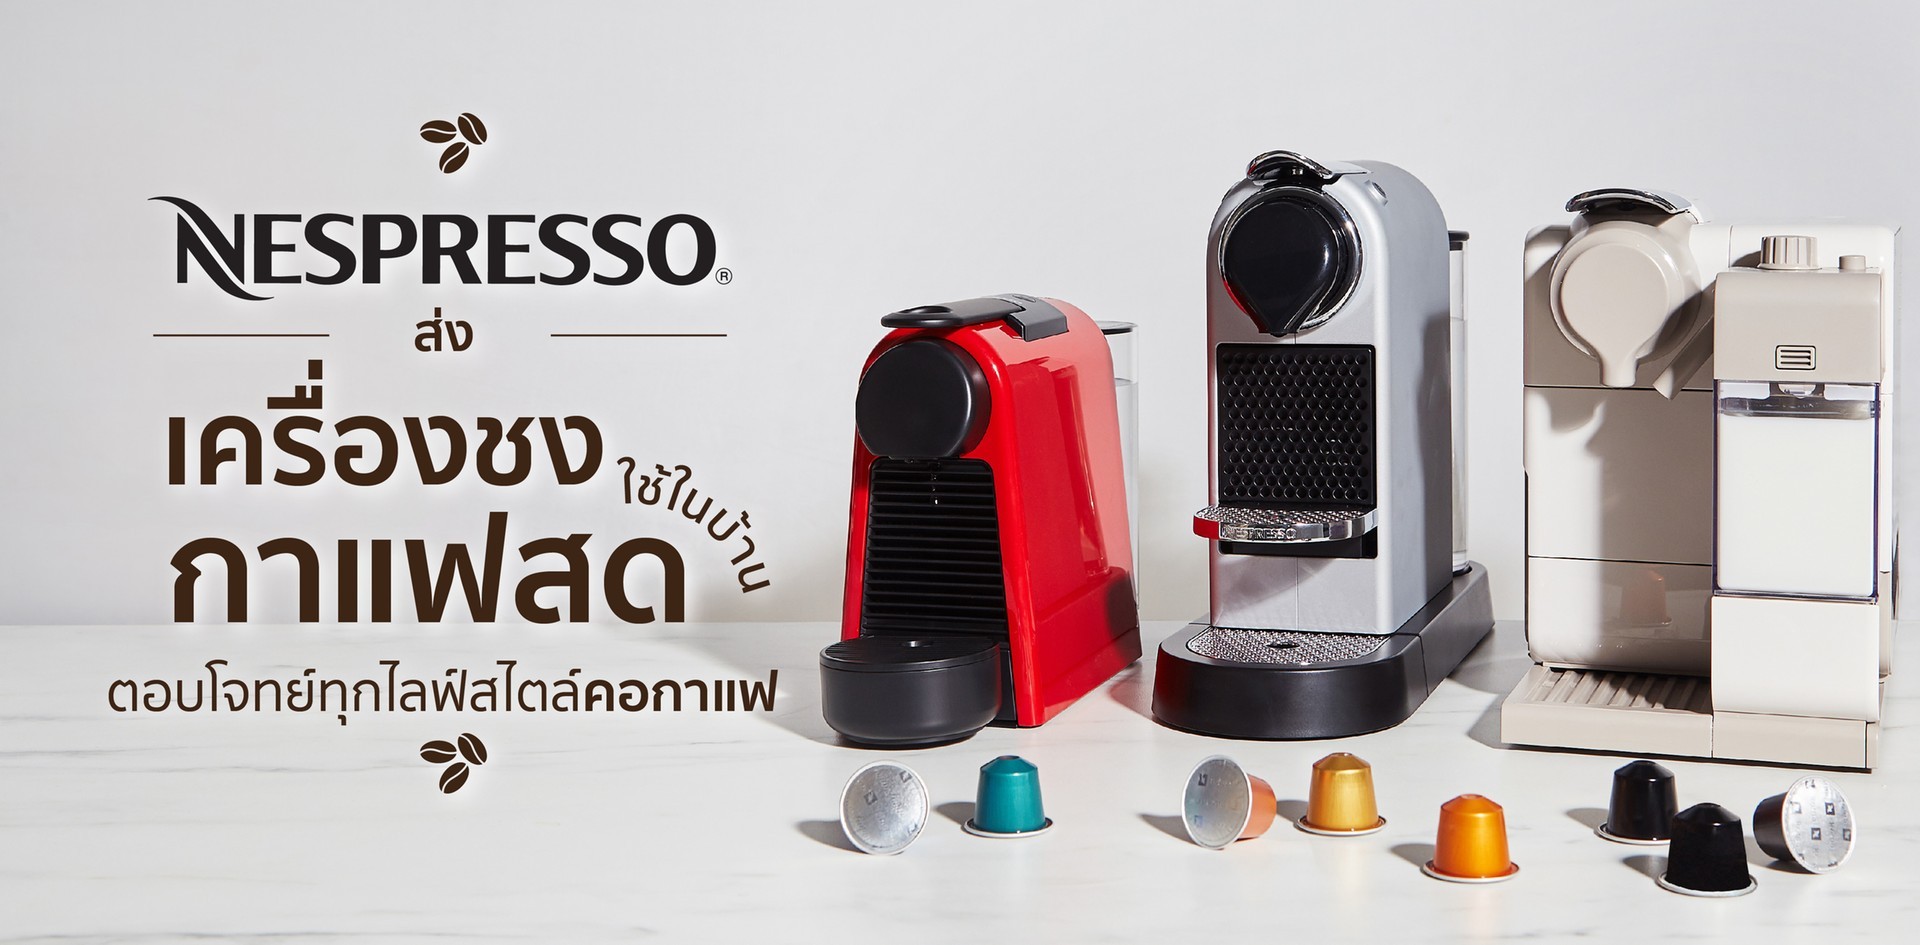 Nespresso ส่งเครื่องชงกาแฟสดใช้ในบ้าน ตอบโจทย์ทุกไลฟ์สไตล์คอกาแฟ